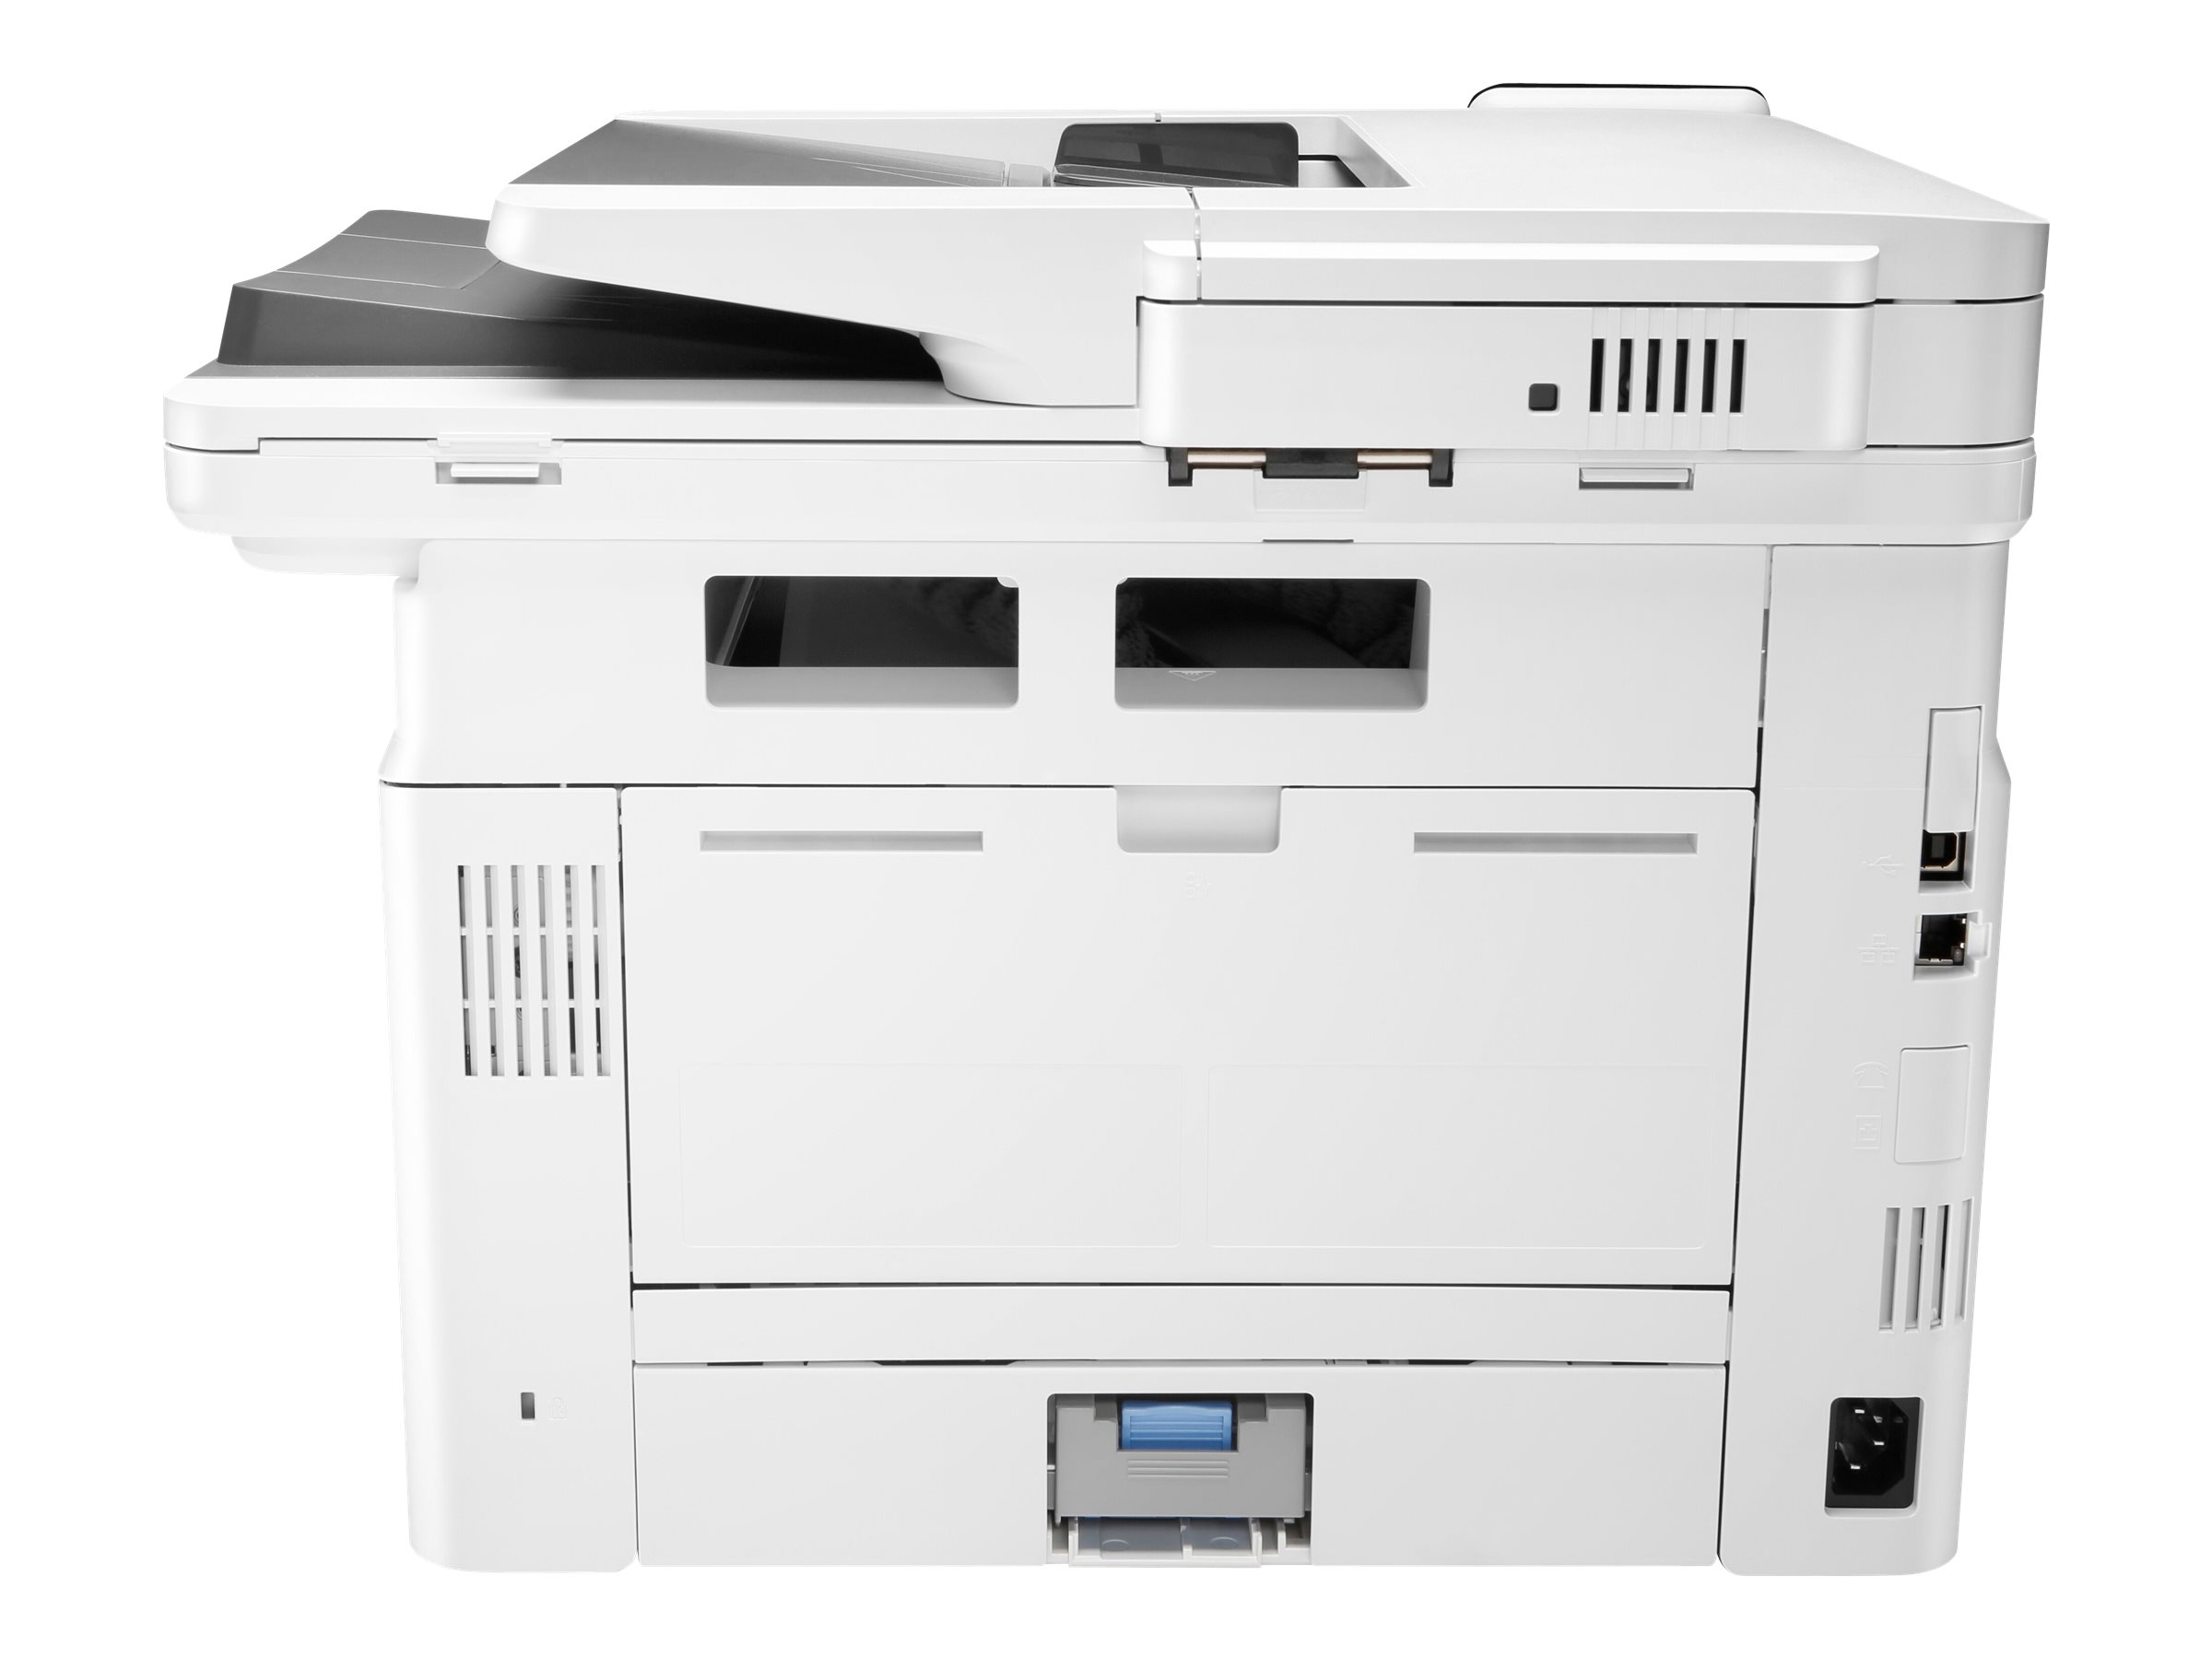 HP LaserJet Pro MFP M428dw - Multifunktionsdrucker - s/w - Laser - Legal (216 x 356 mm)